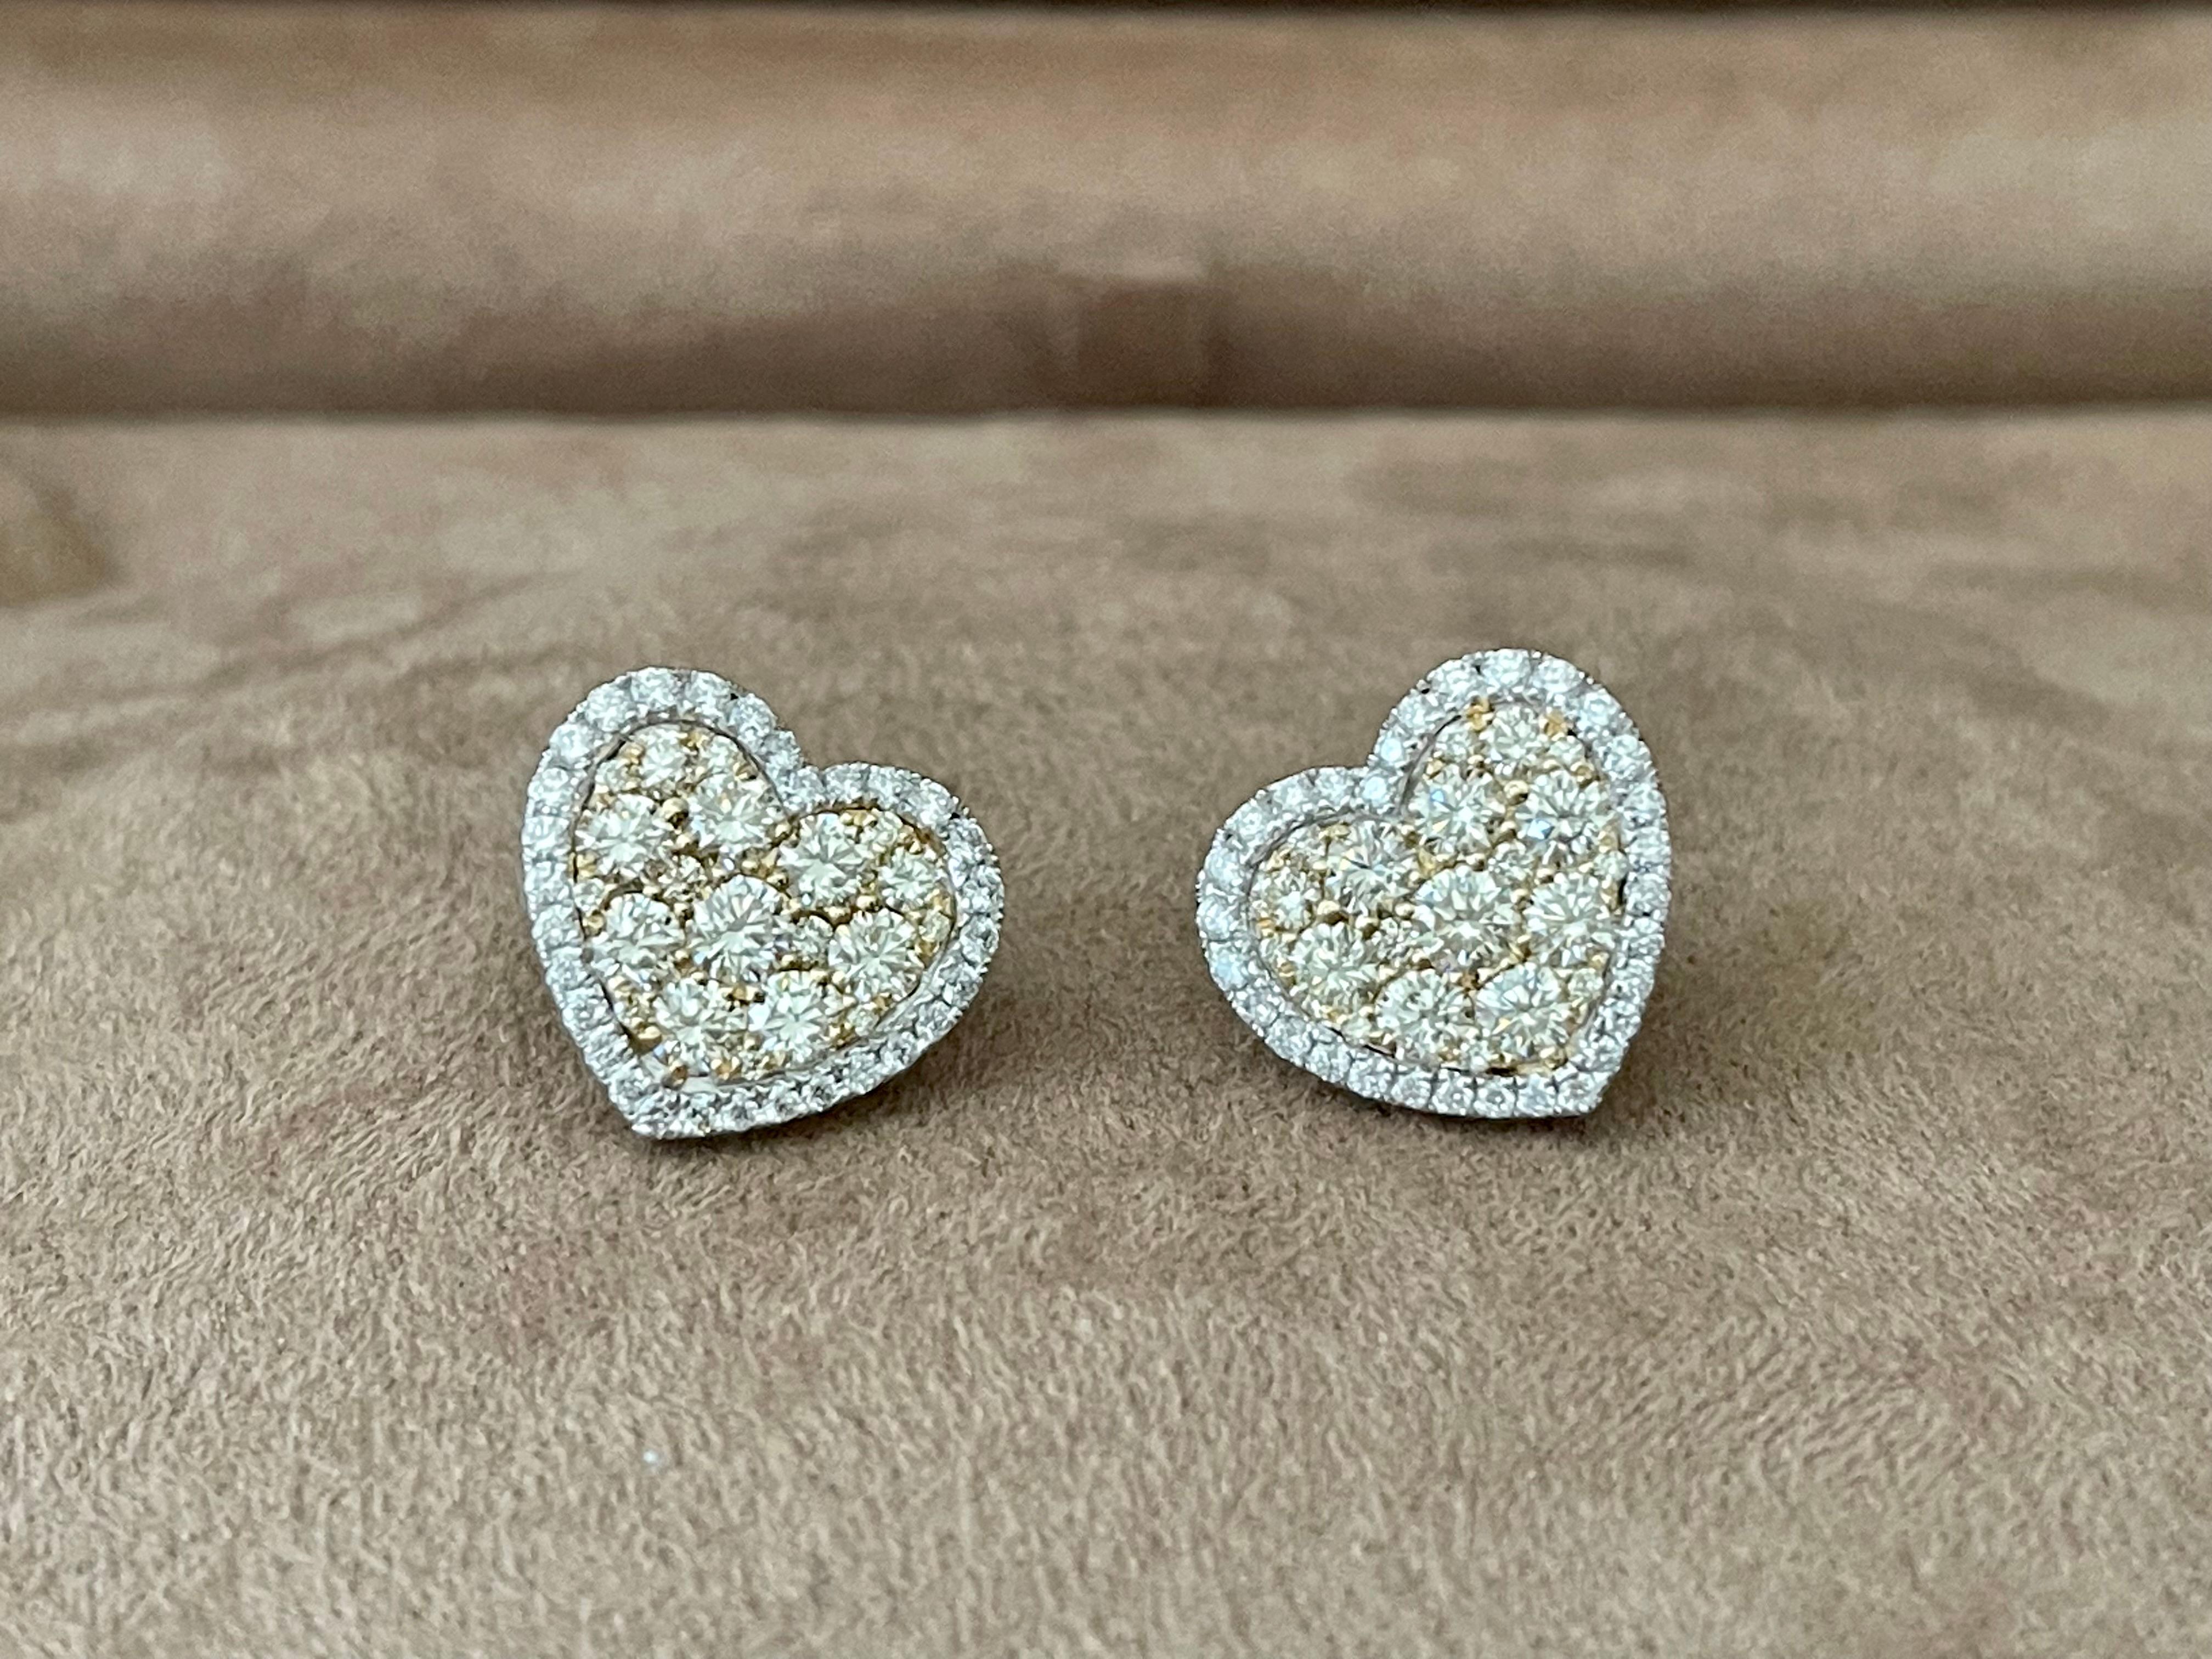 Boucles d'oreilles en forme de cœur en or 14 K K, serties de diamants pavés. Ces boucles d'oreilles féminines et romantiques sont serties de diamants étincelants. Le symbole parfait de l'amour pour l'être cher.
Ces boucles d'oreilles absolument